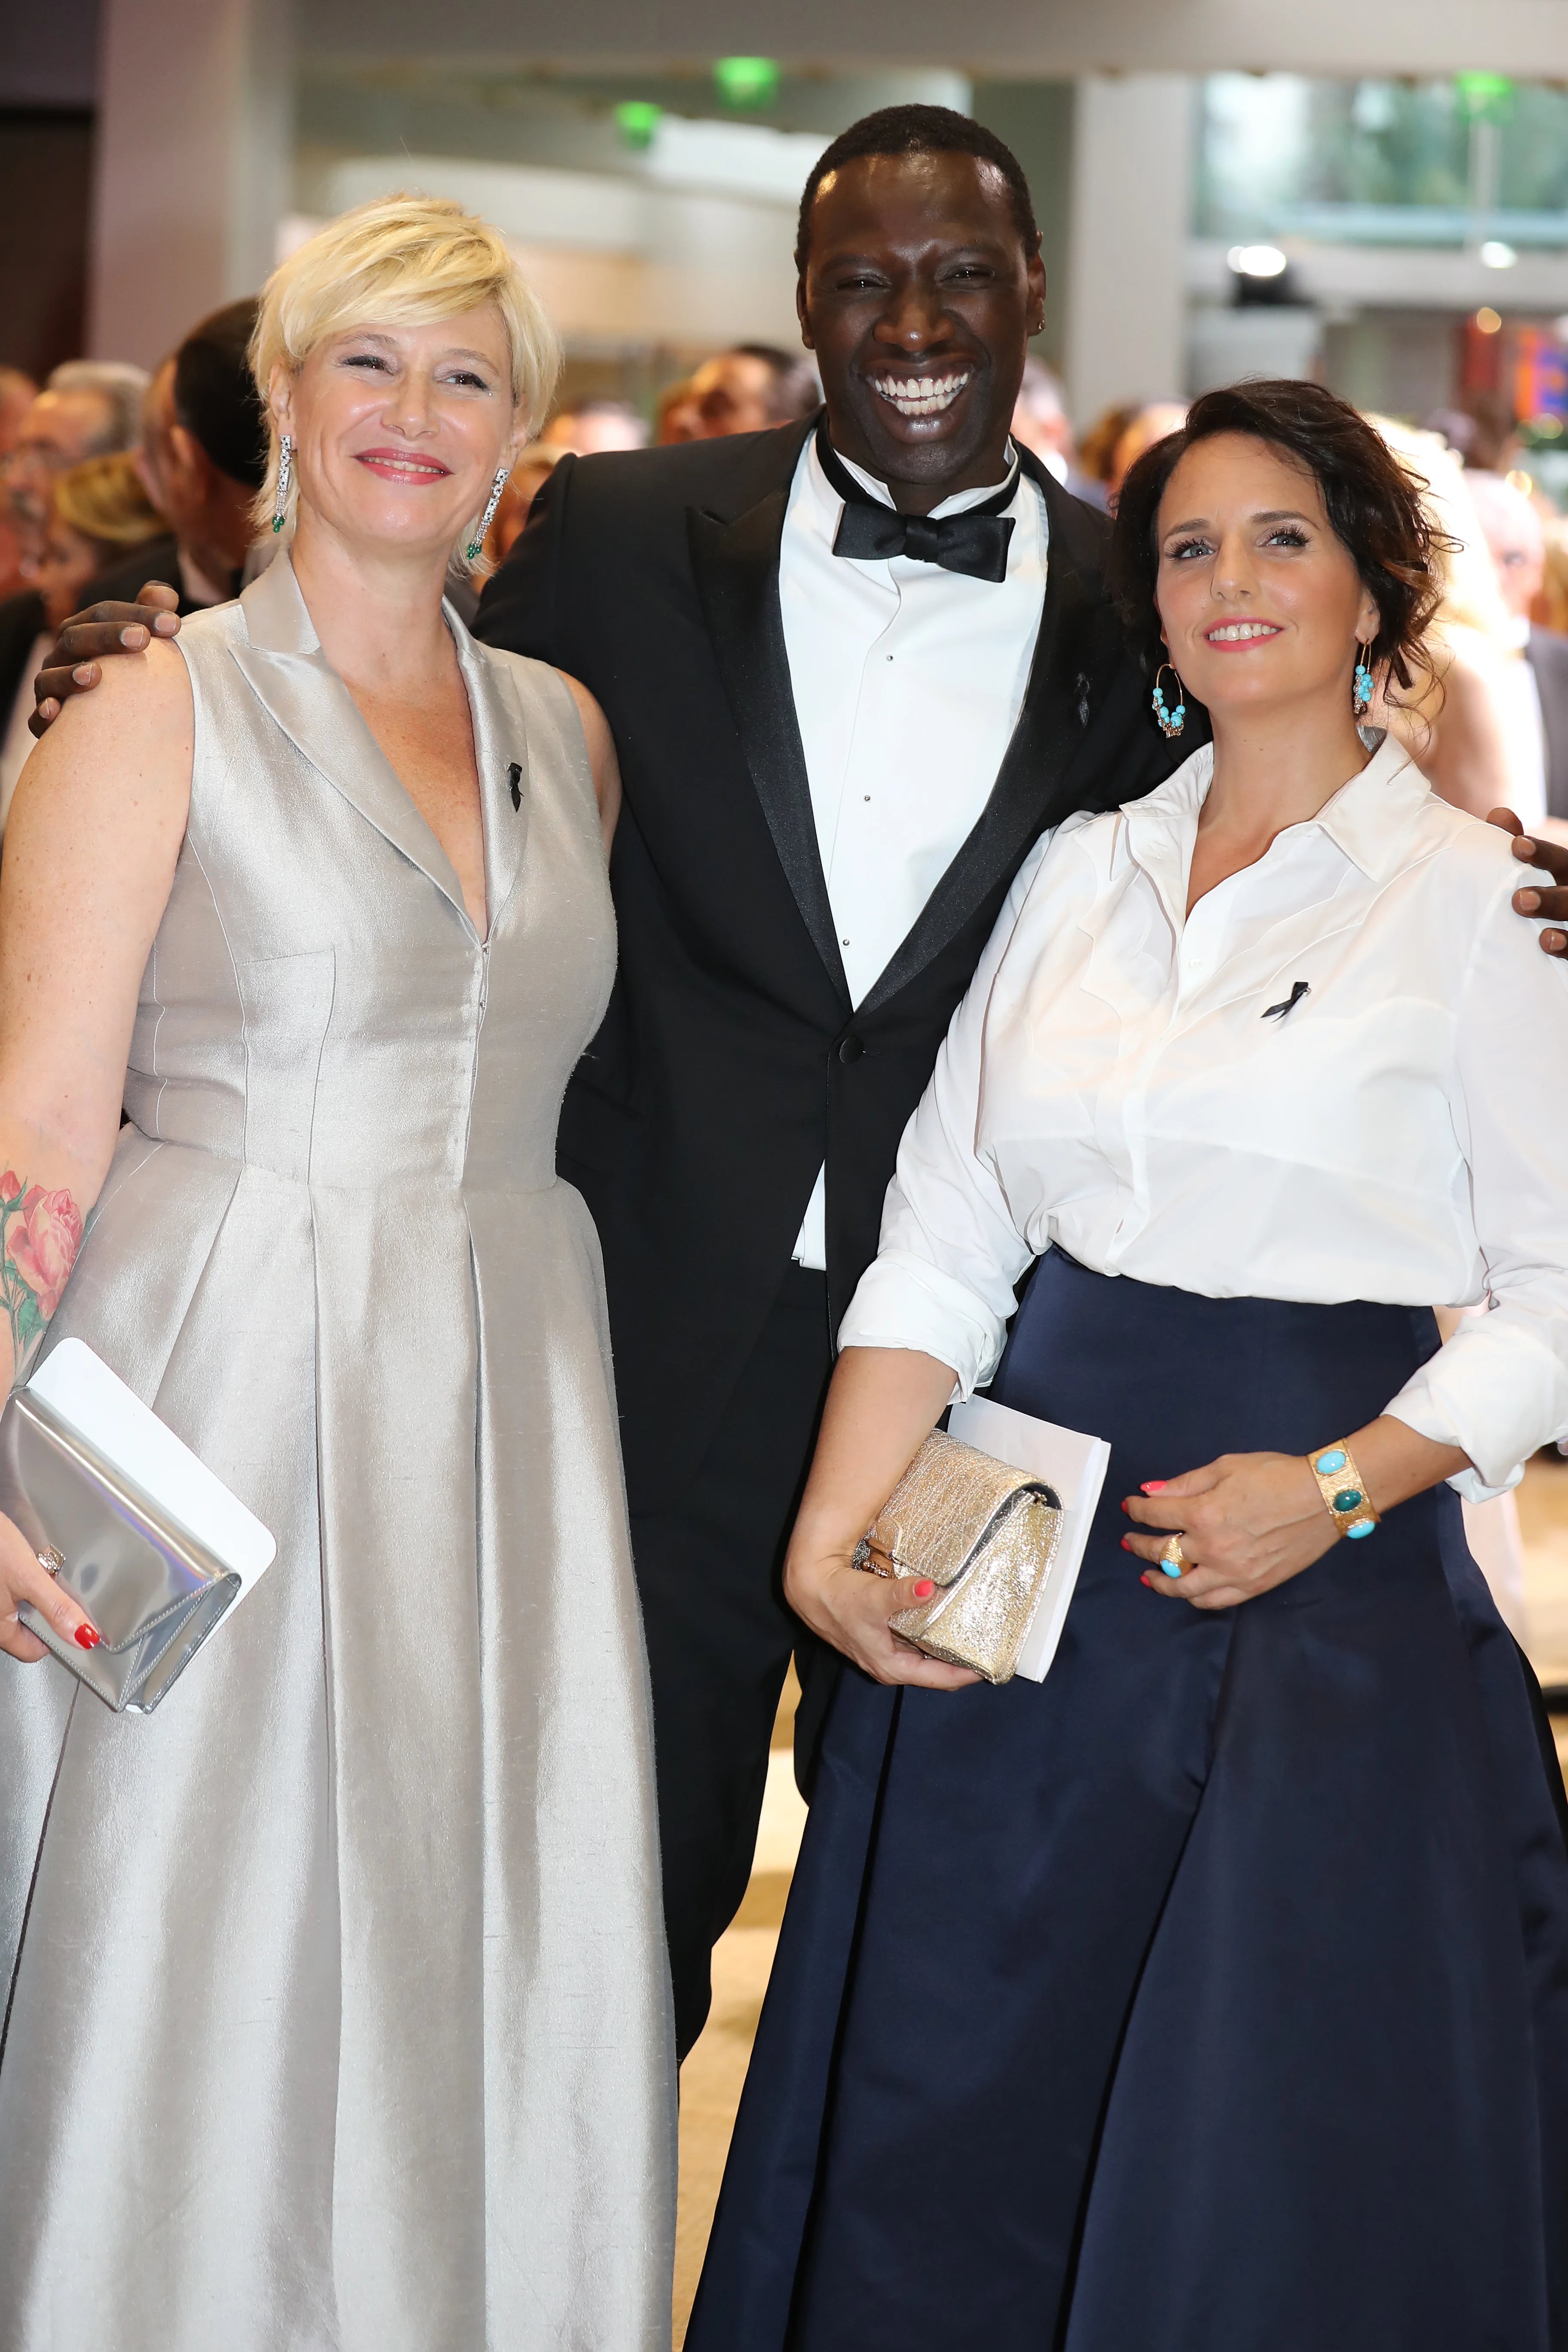 Entre los invitados se encontraban muchas celebridades europeas, como Omar Sy junto a su esposa Helena y la presentadora de televisión Maitena Biraben